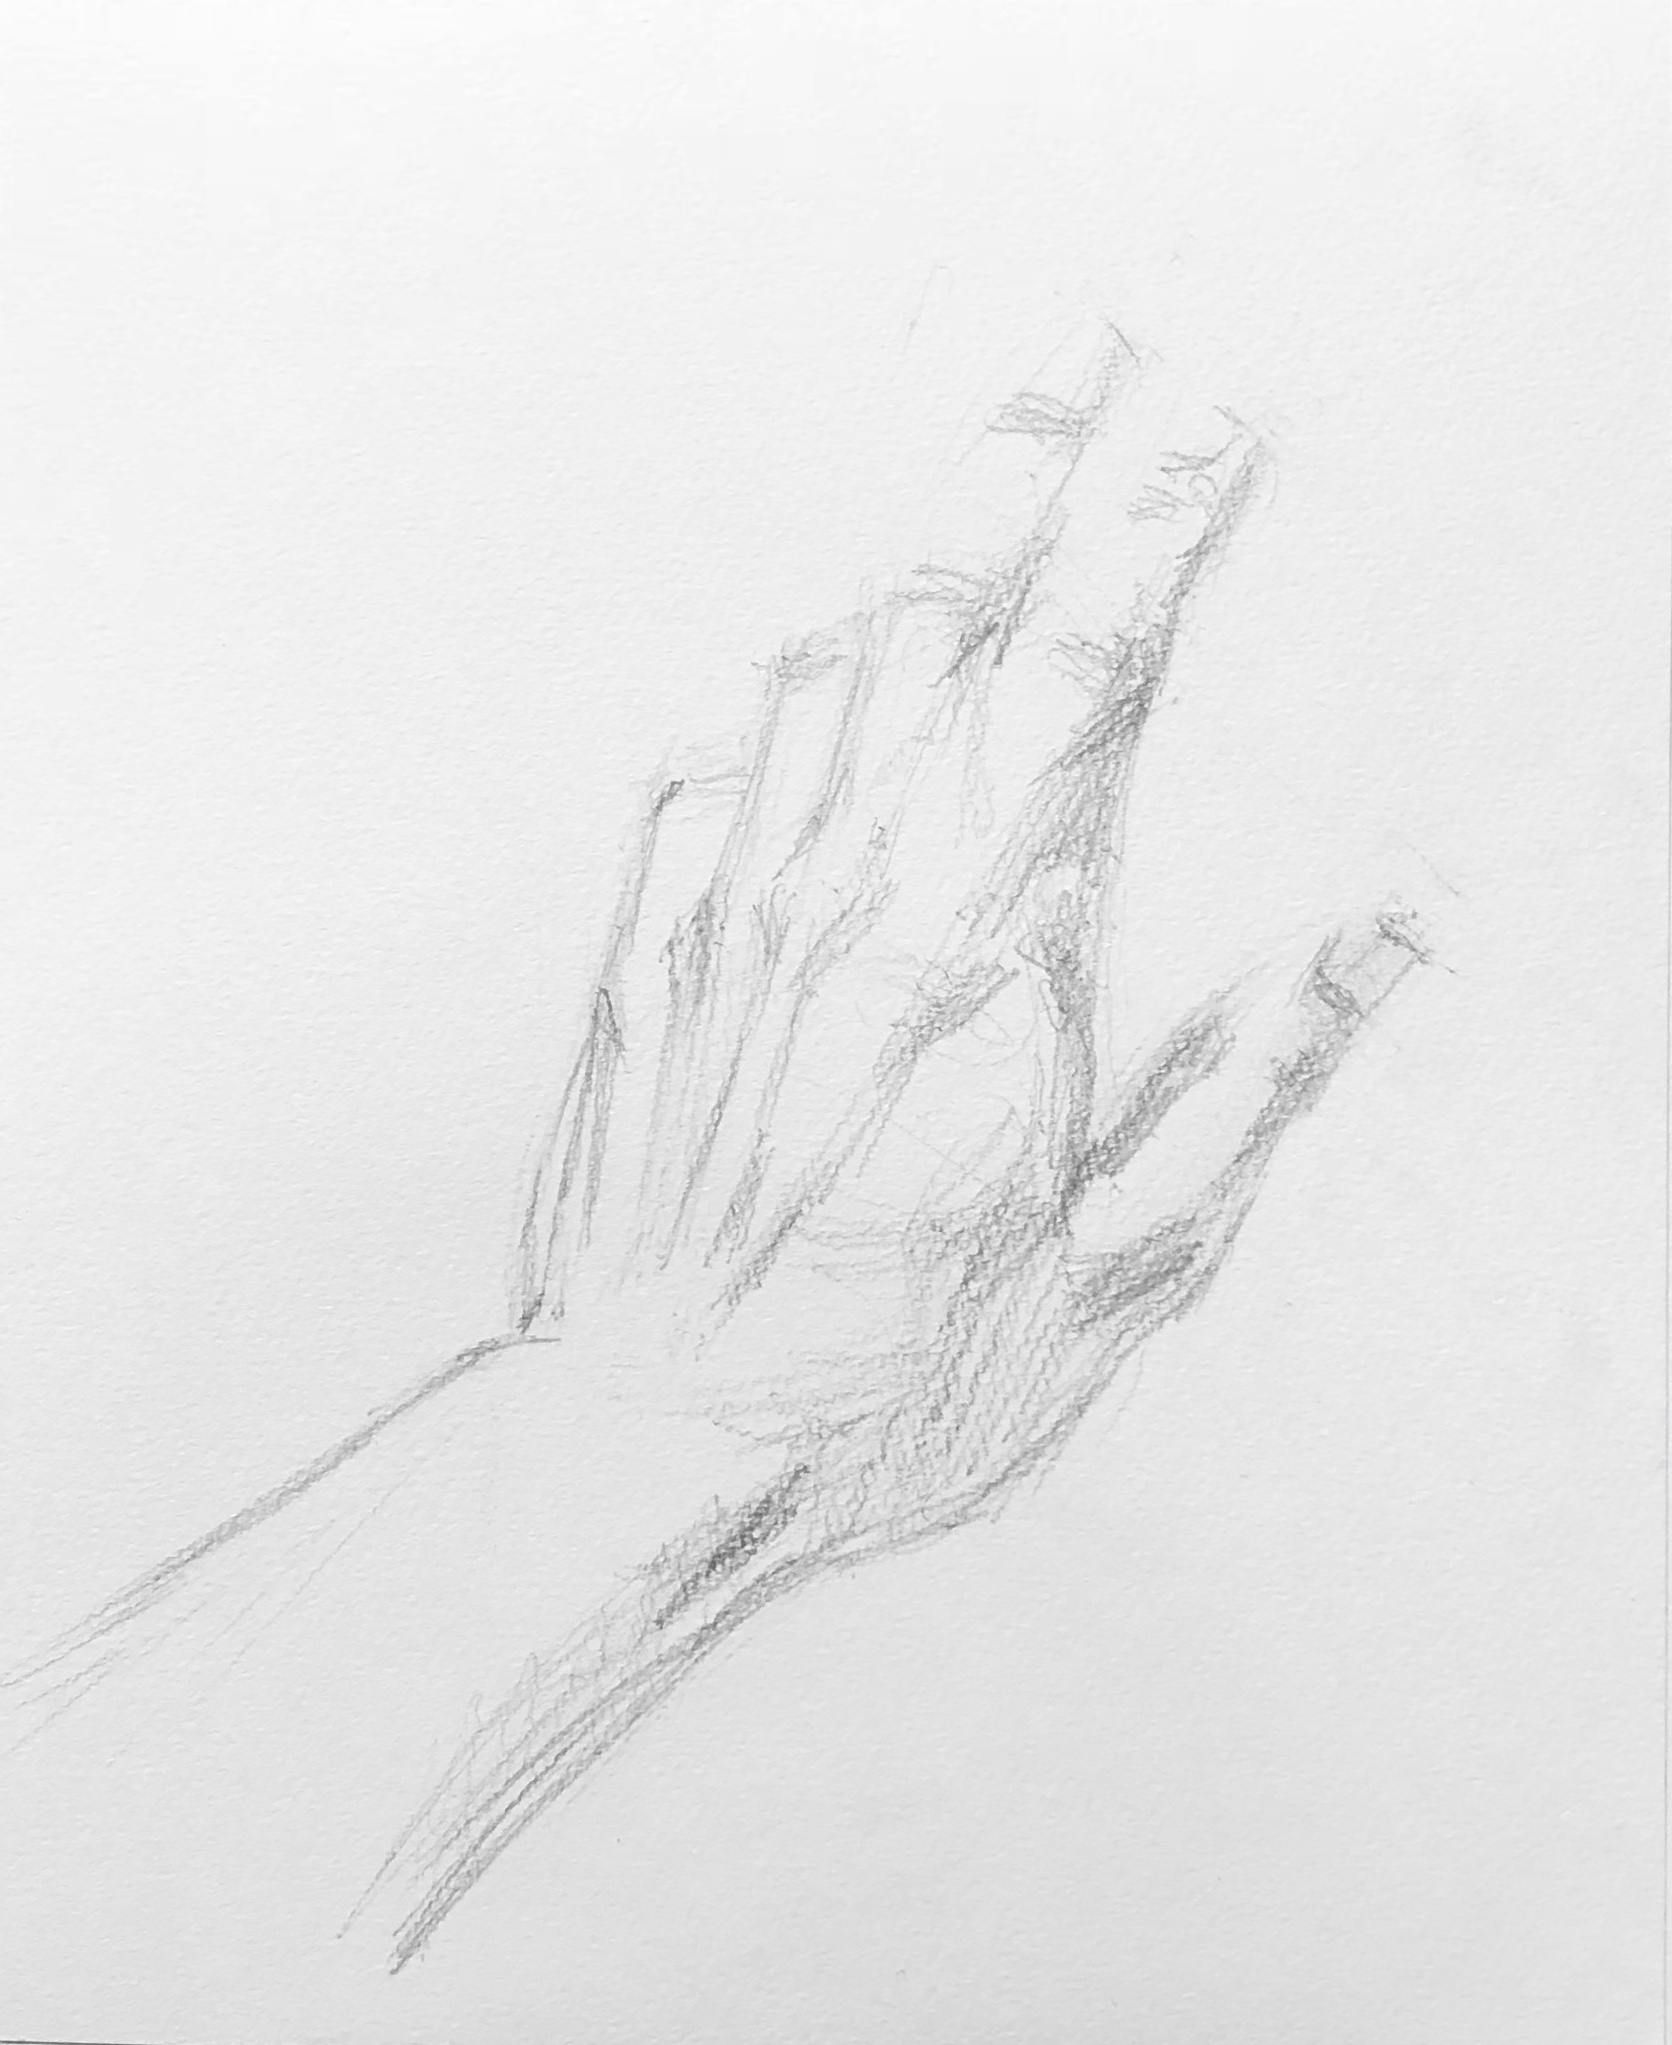 手を描くには関節を意識することが大切 初心者向けに画家が解説 デッサン編 絵画デッサン屋 Houichi美術絵描き研究所